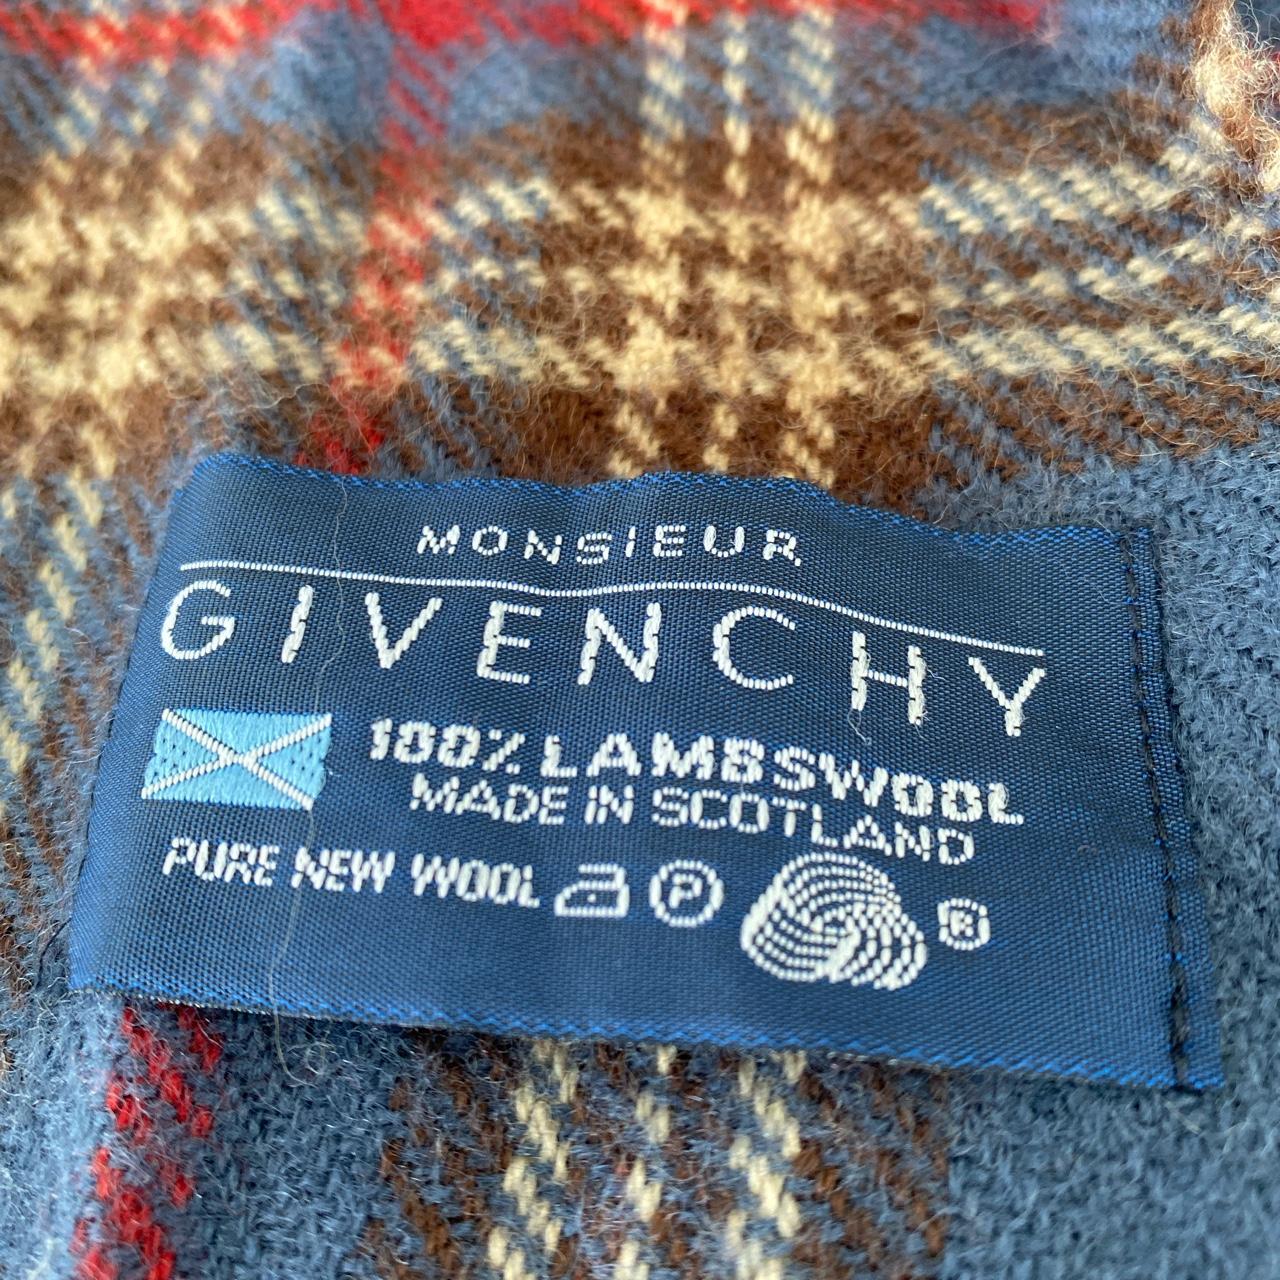 Givenchy Scarf Wool Muffler Good... - Depop